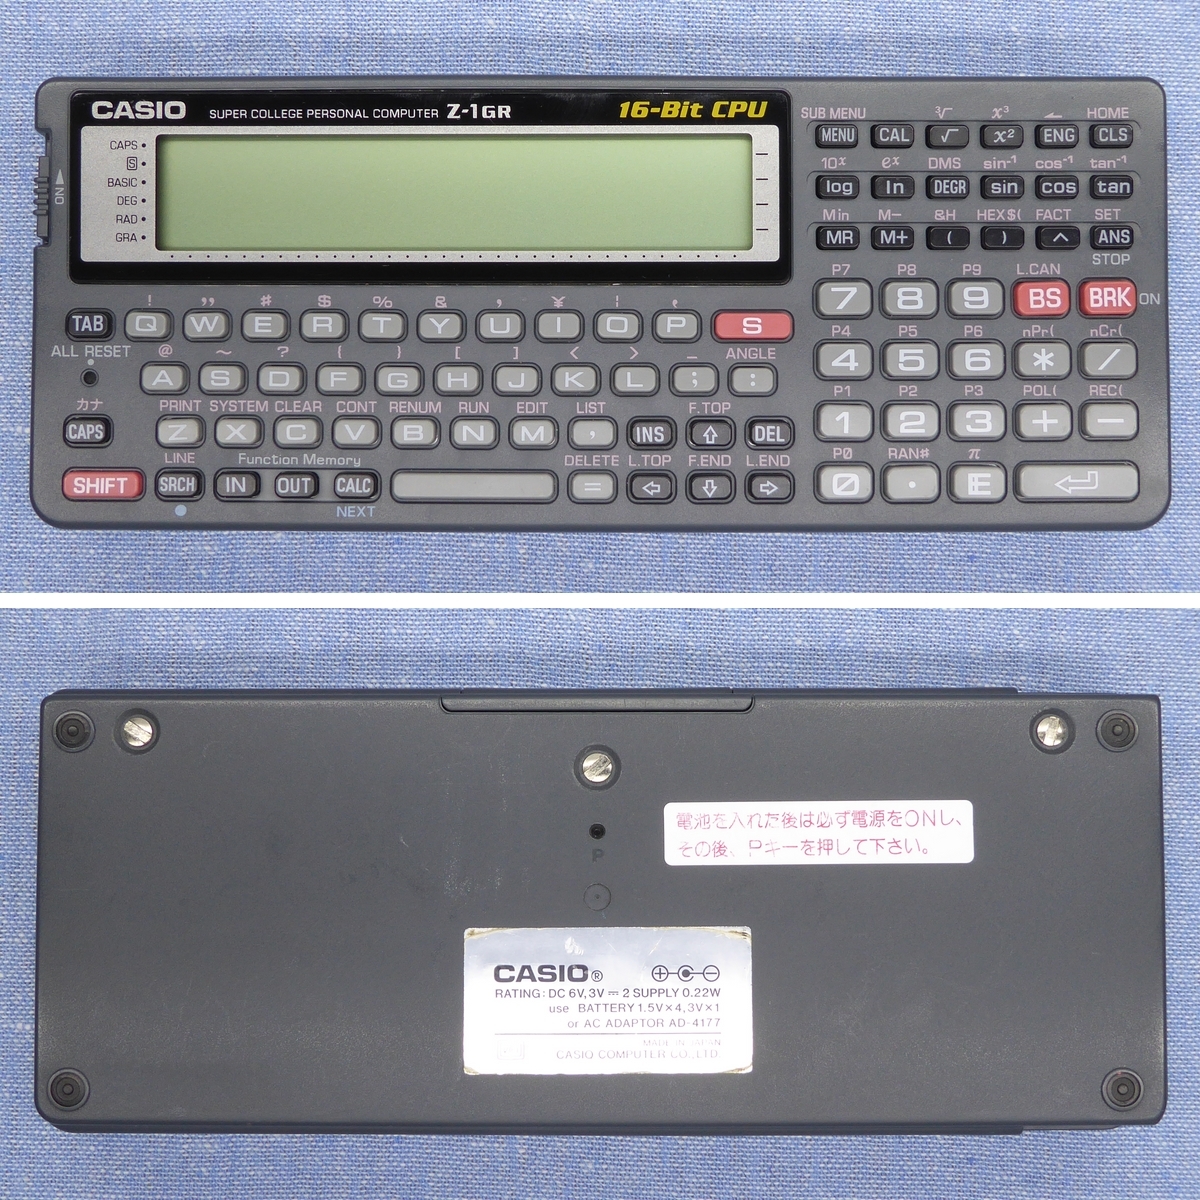 CASIO Z-1GR RAM 増設 ポケットコンピュータ (カシオ ポケコン FX-890P 同等品)